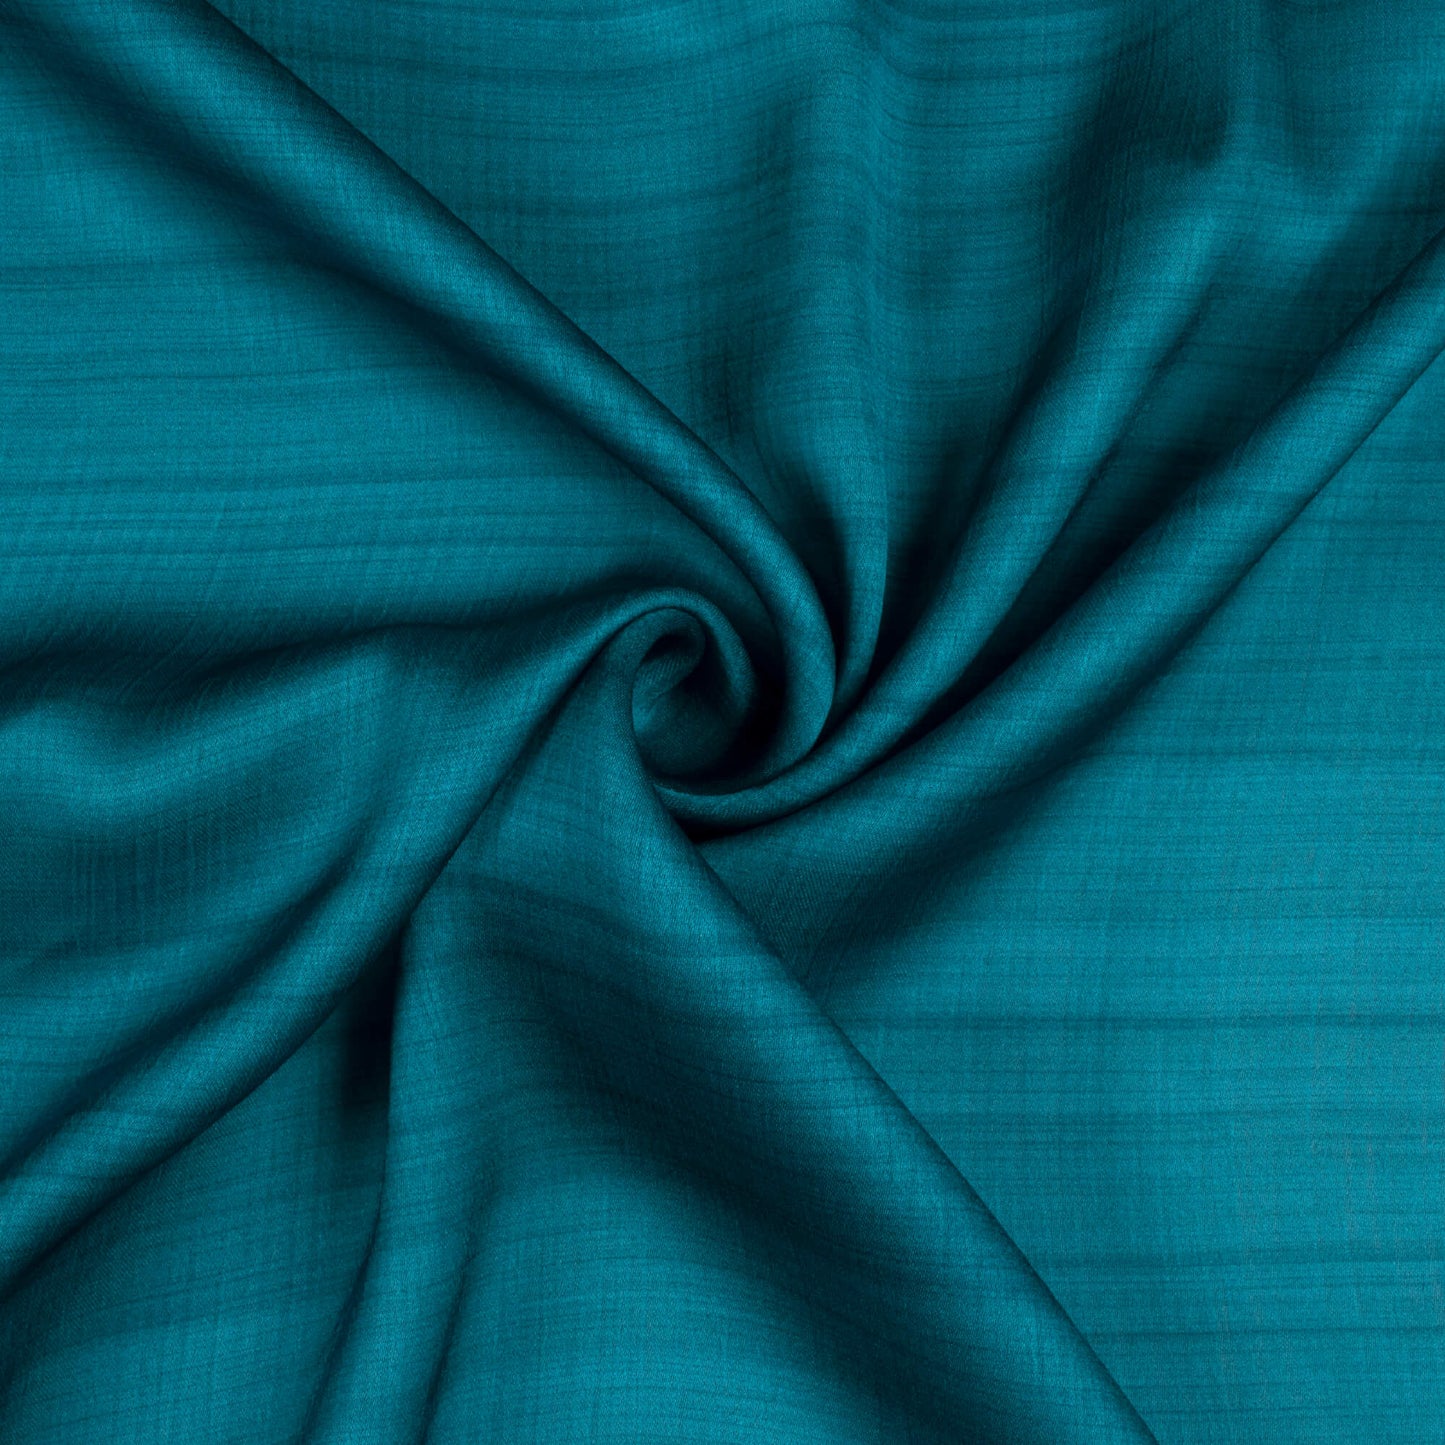 Lagoon Blue Texture Pattern Digital Print Chiffon Satin Fabric